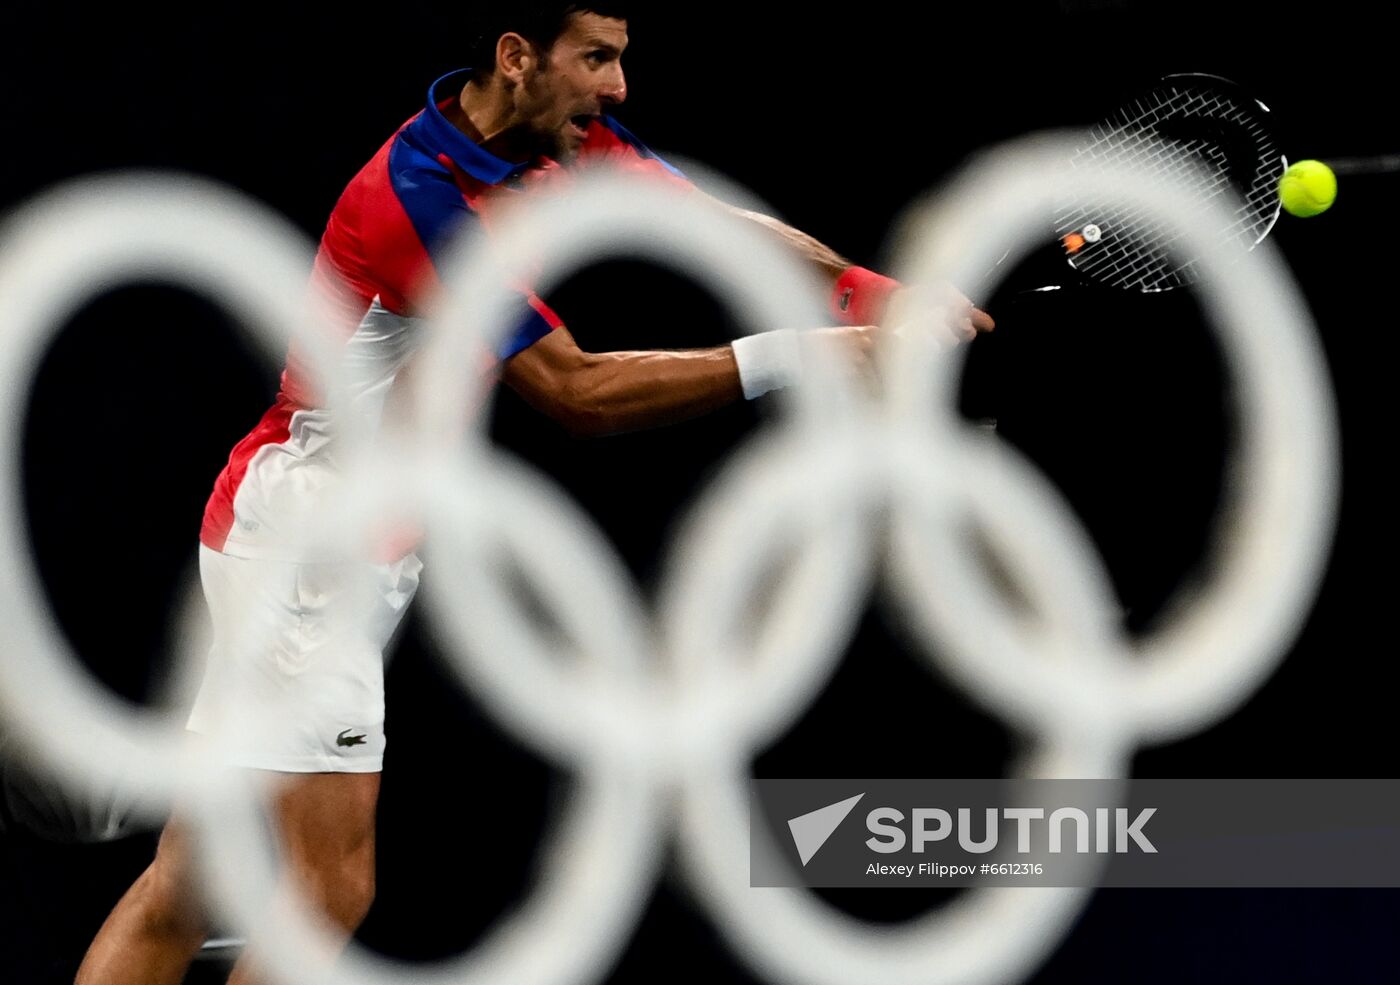 Japan Olympics 2020 Tennis Mixed Doubles Vesnina/Karatsev - Stojanovic/Djokovic